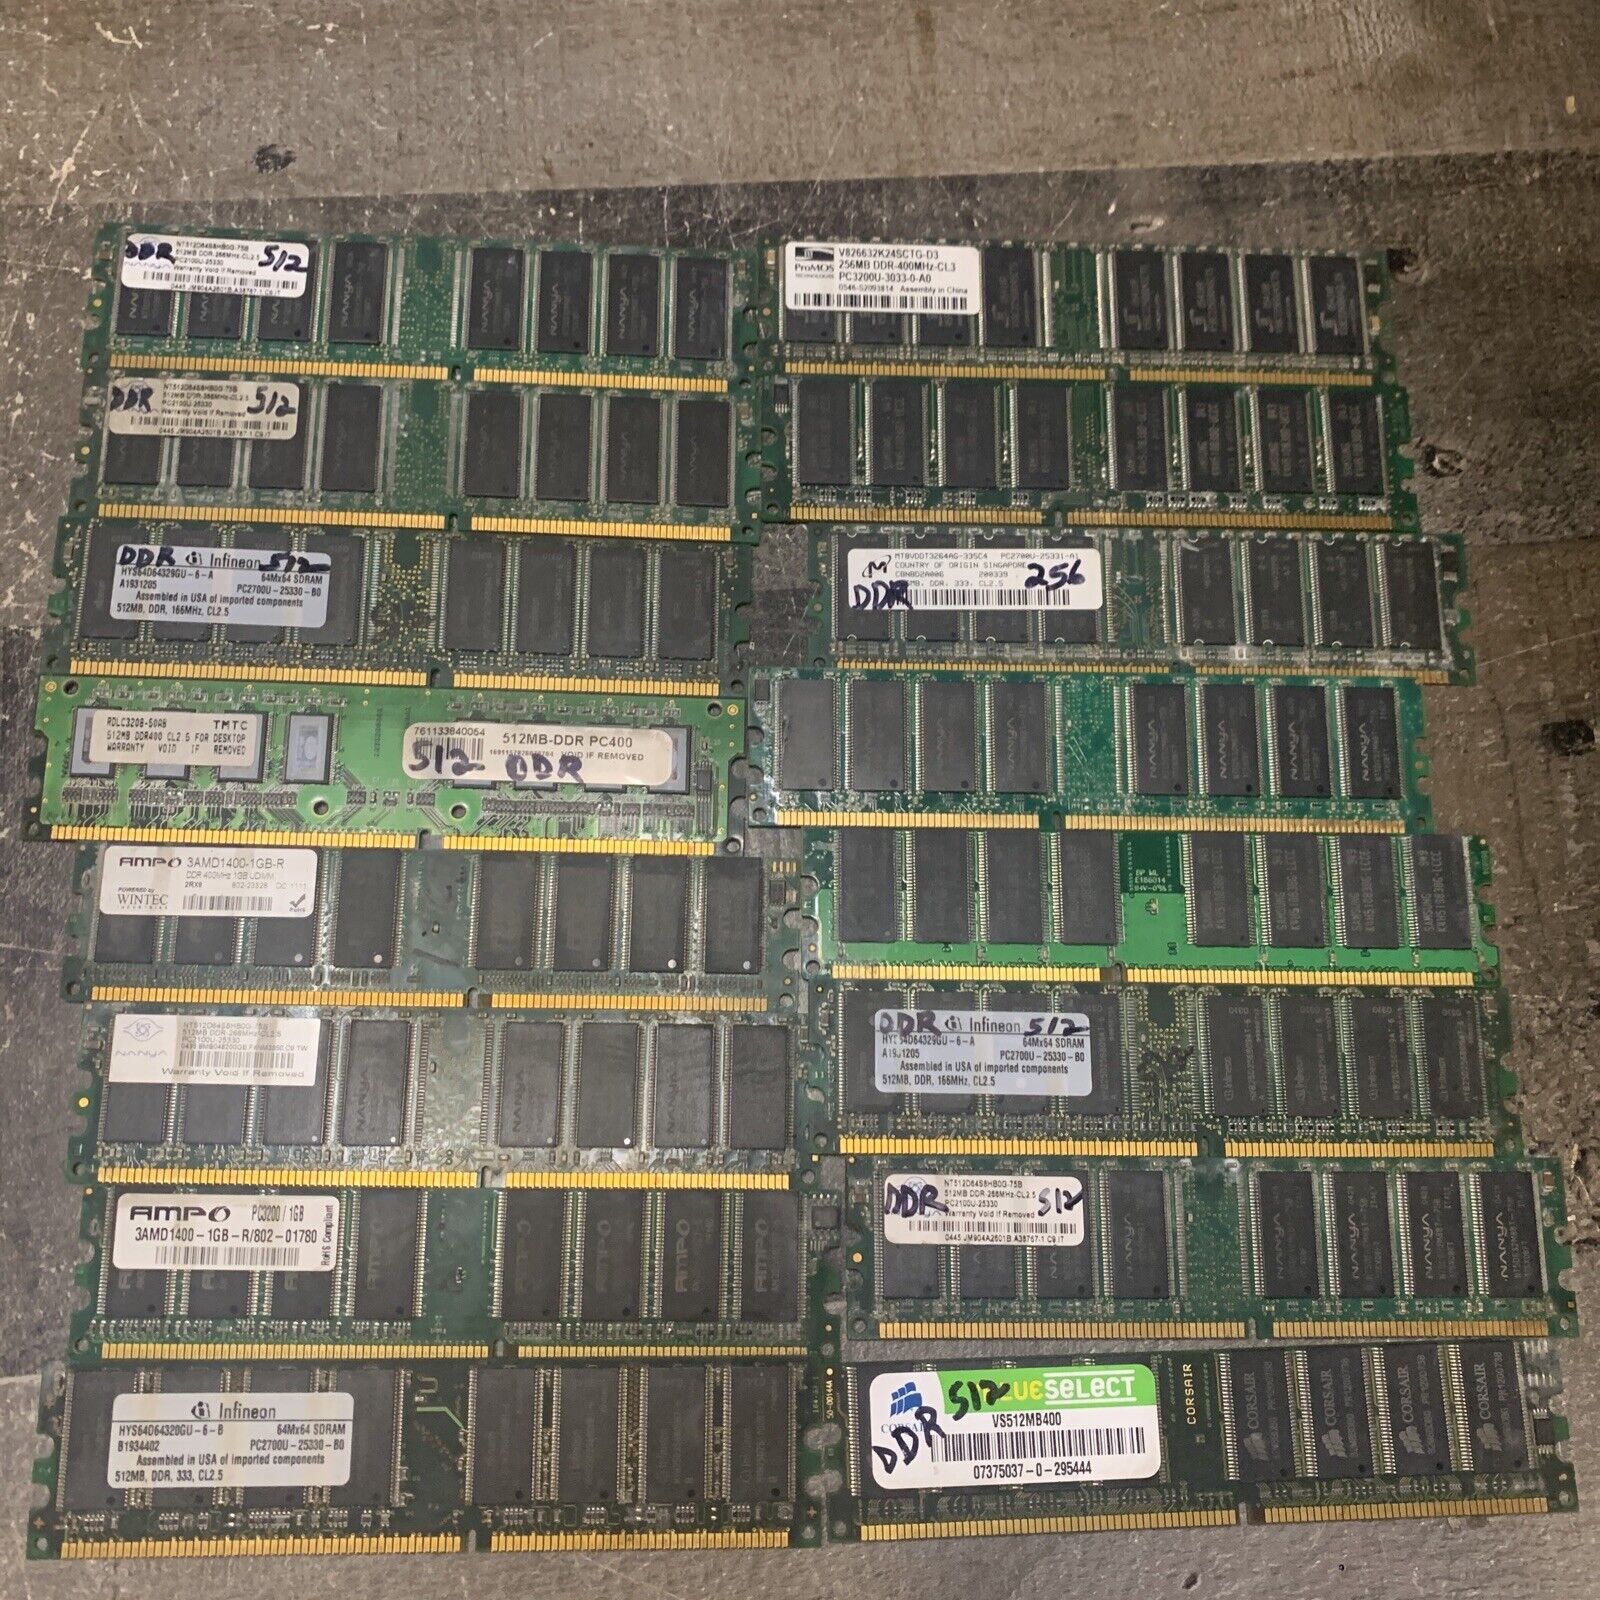 (2) 256MB DIMM Memory Module (10) 512mb DIMMs (4) 1GB 16 total various brands